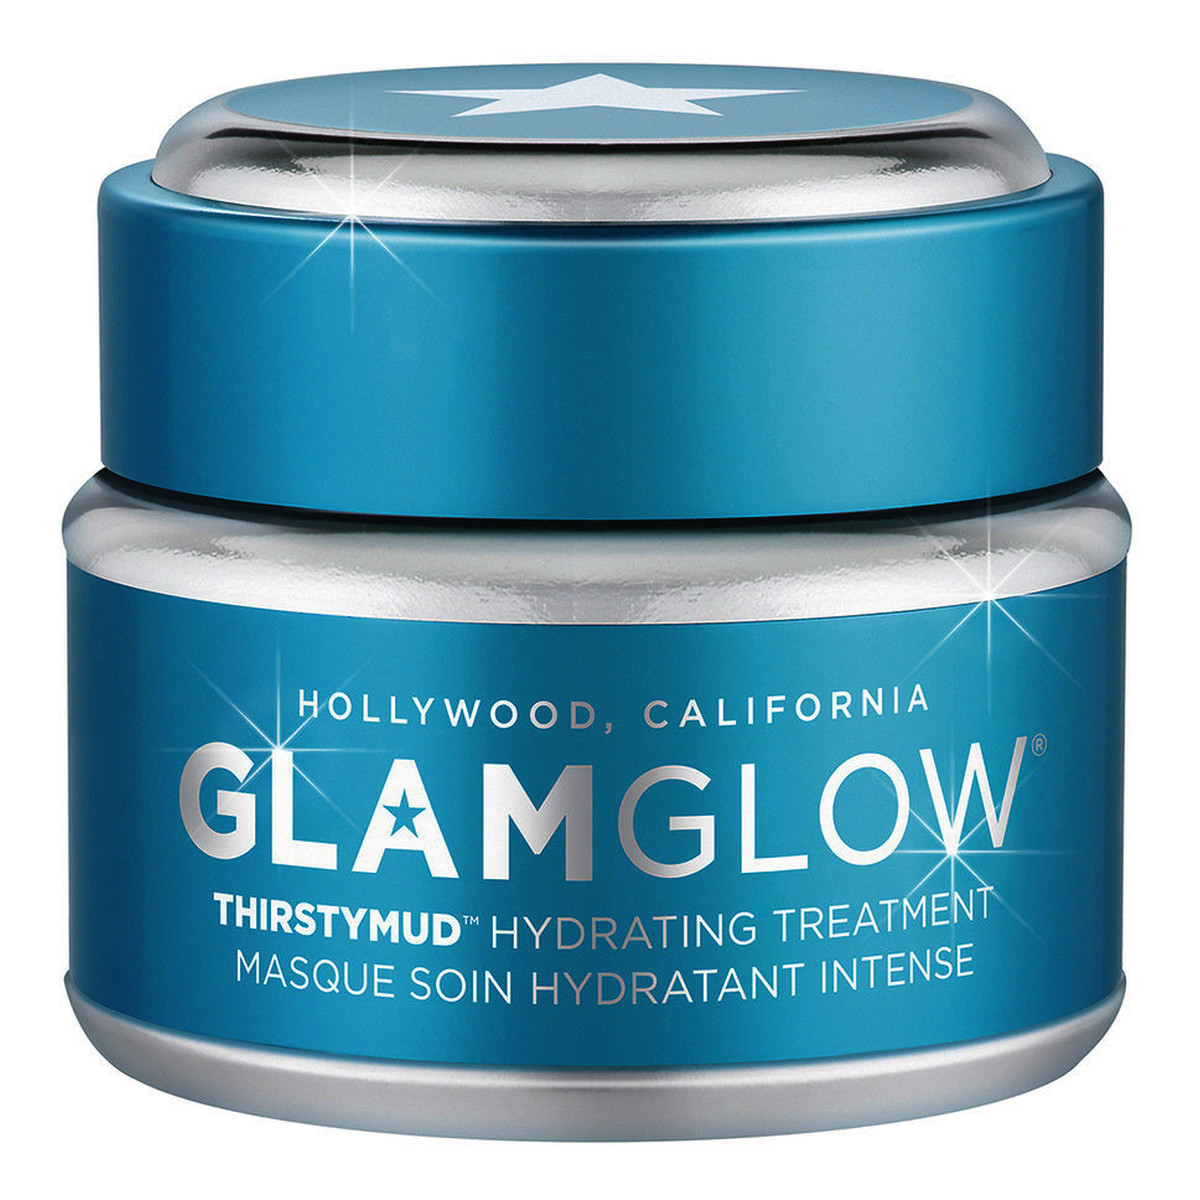 GlamGlow Thirstymud Hydrating Treatment Nawilżająca maseczka do twarzy 50g